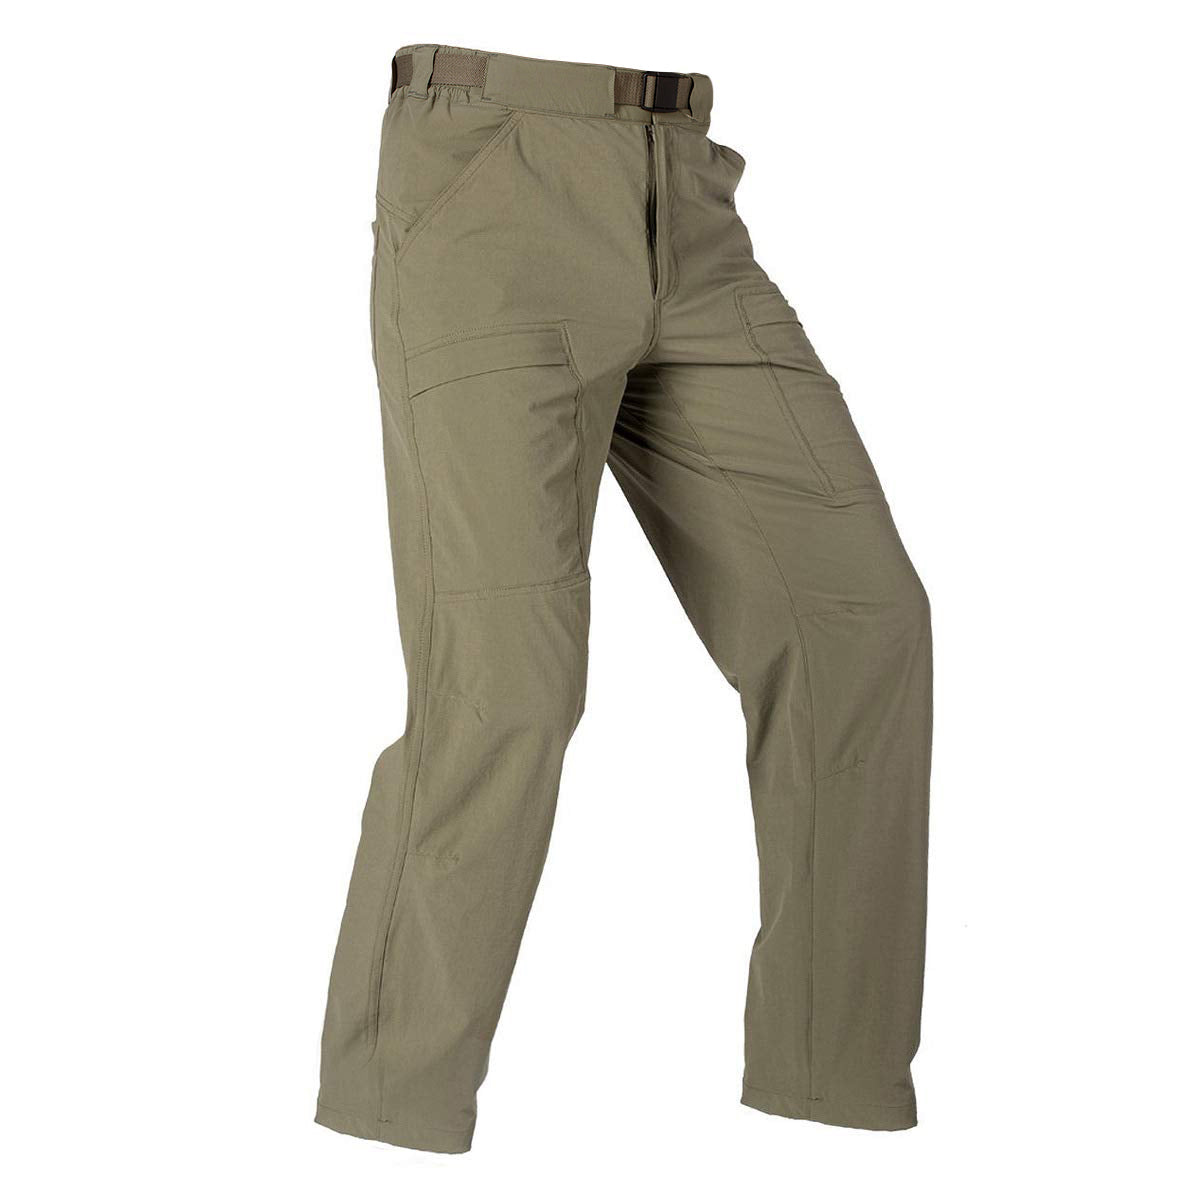 Taupe lightweight stretch pant Slim fit, Le 31, Shop Men's Dress Pants